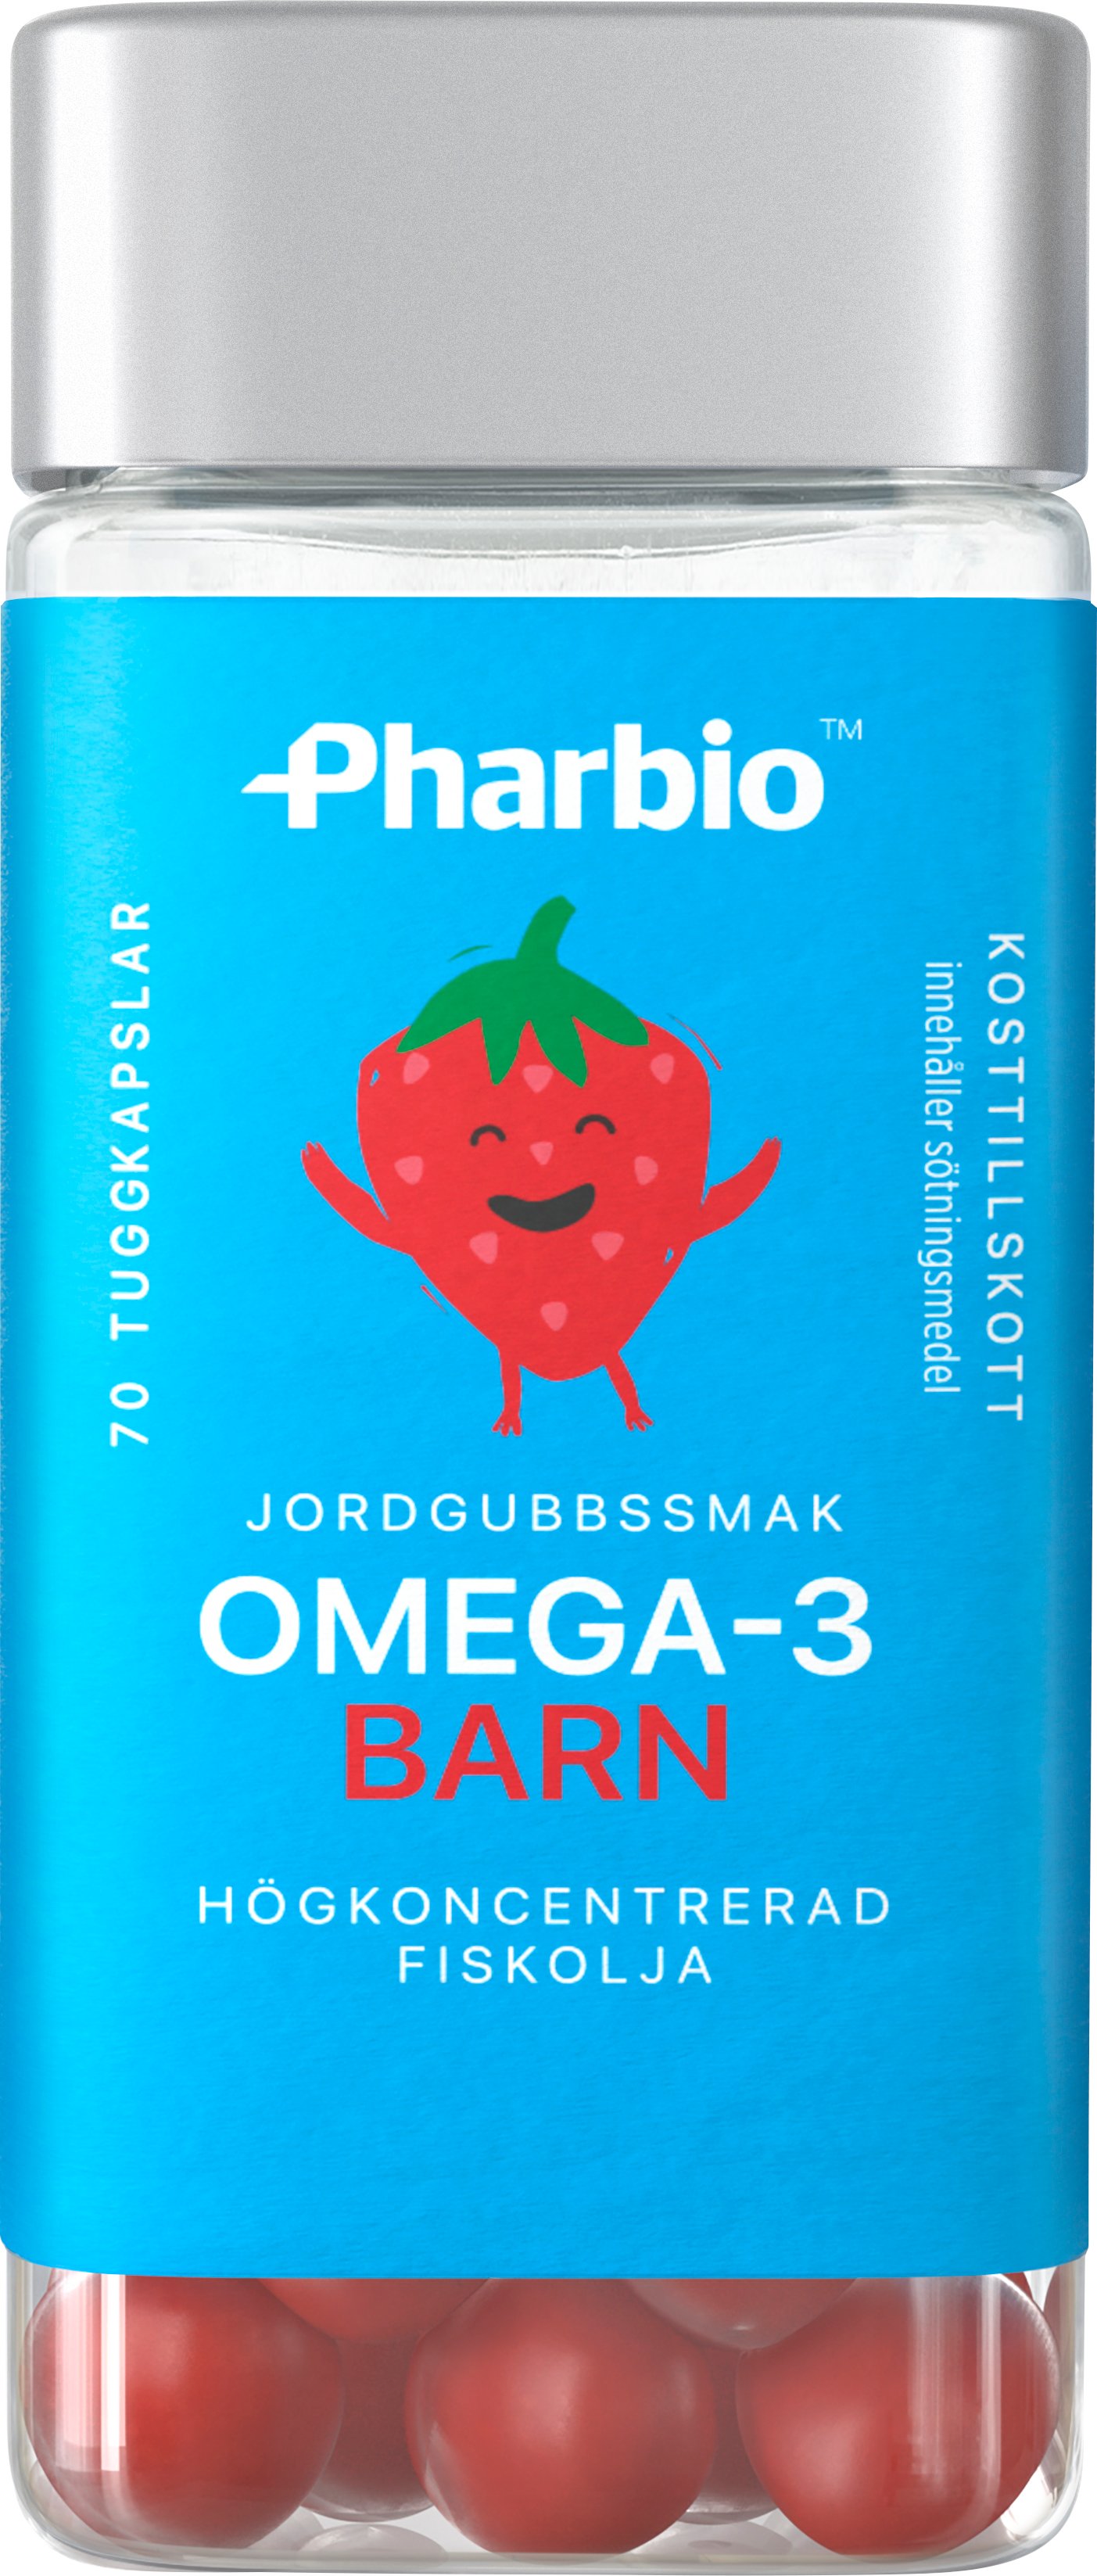 Pharbio Omega-3 Barn Jordgubbssmak 70 tuggkapslar